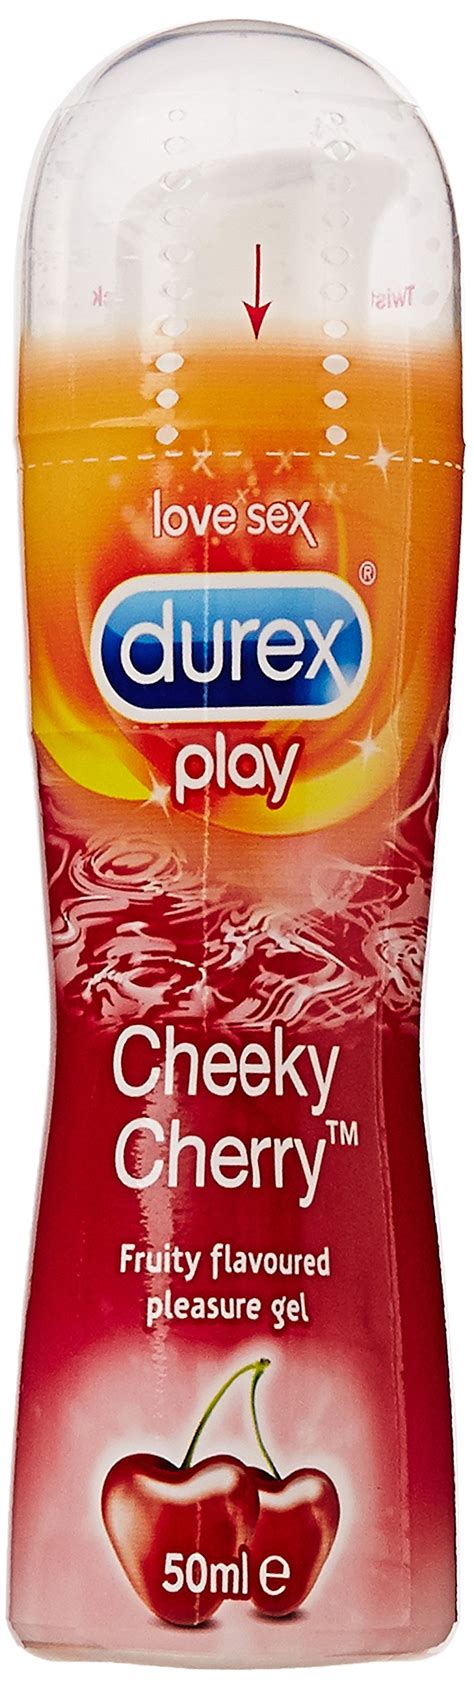 Durex Play 50 Ml Cherry Lubricant Buy Online In Kenya At Ke Productid 51542272